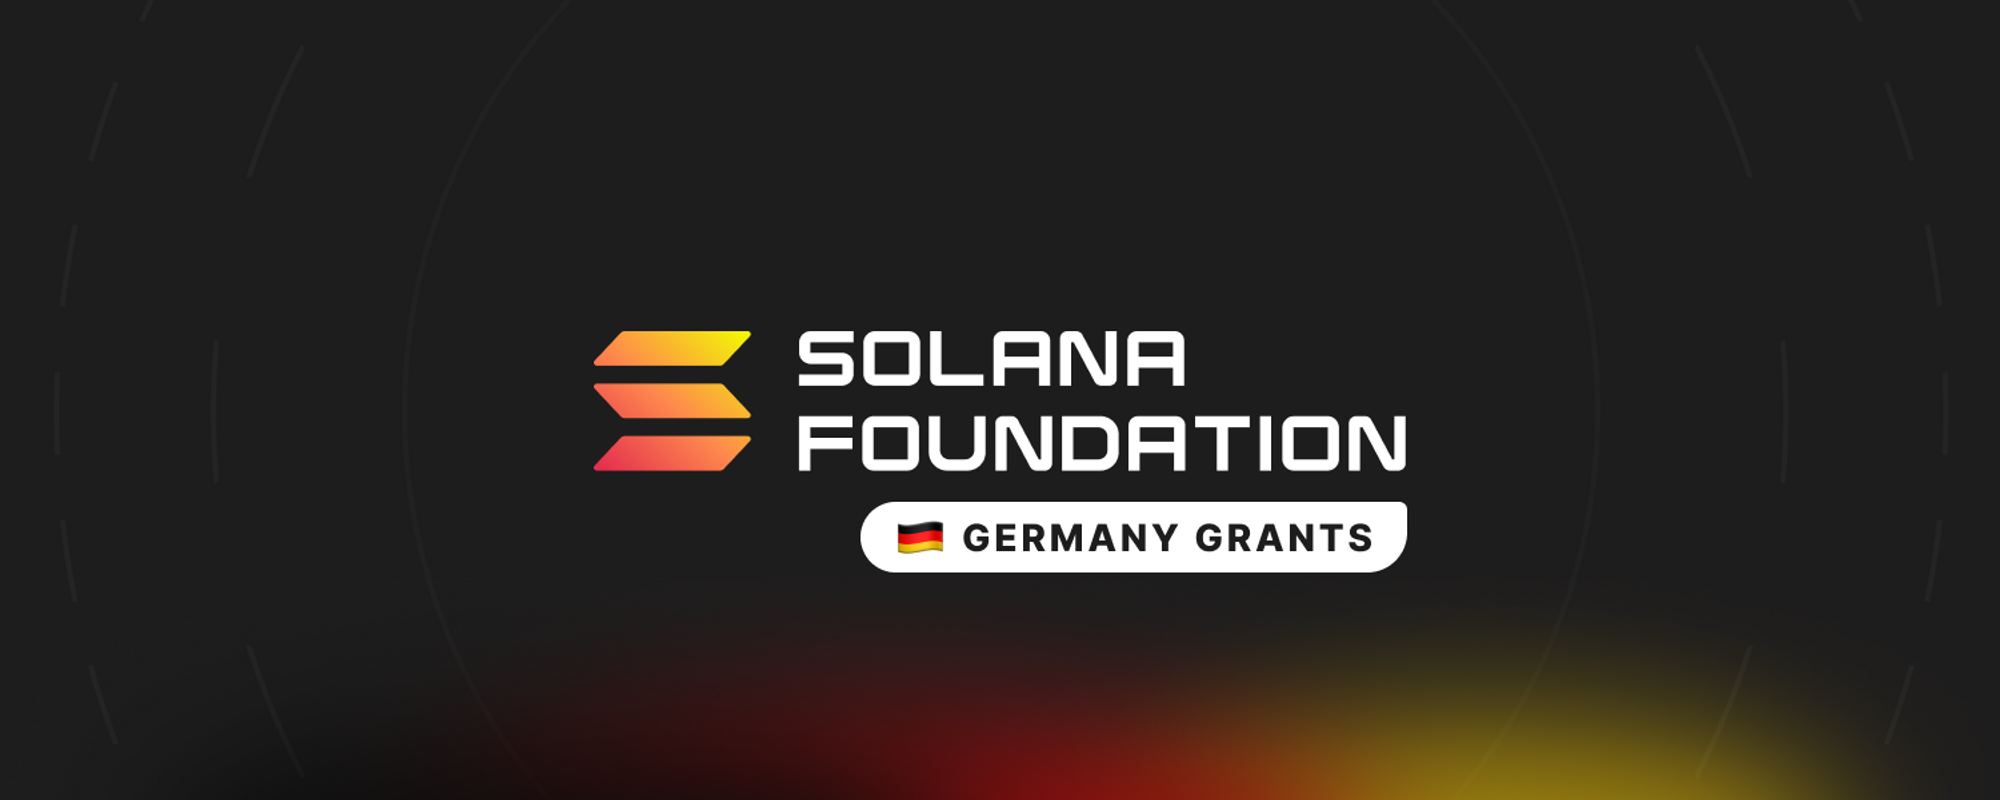 Solana Foundation Germany Grants